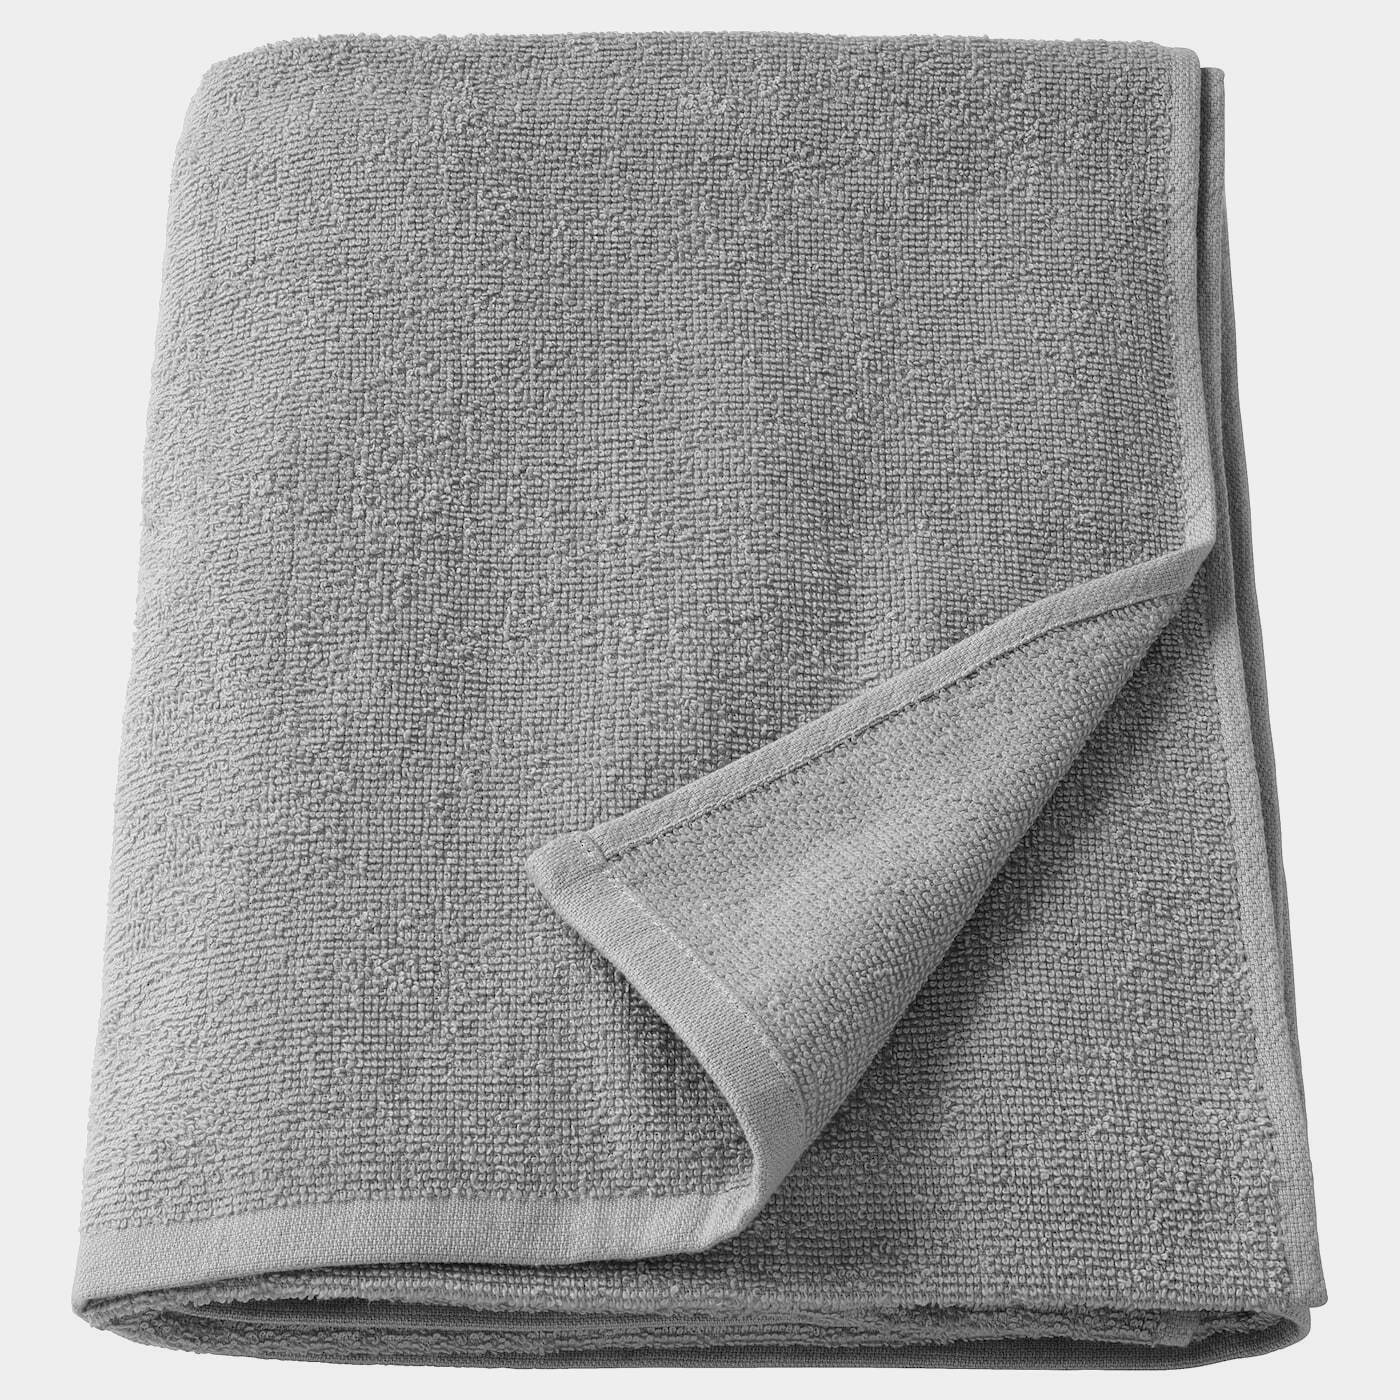 KORNAN Badelaken  - Handtücher - Textilien Ideen für dein Zuhause von Home Trends. Textilien Trends von Social Media Influencer für dein Skandi Zuhause.